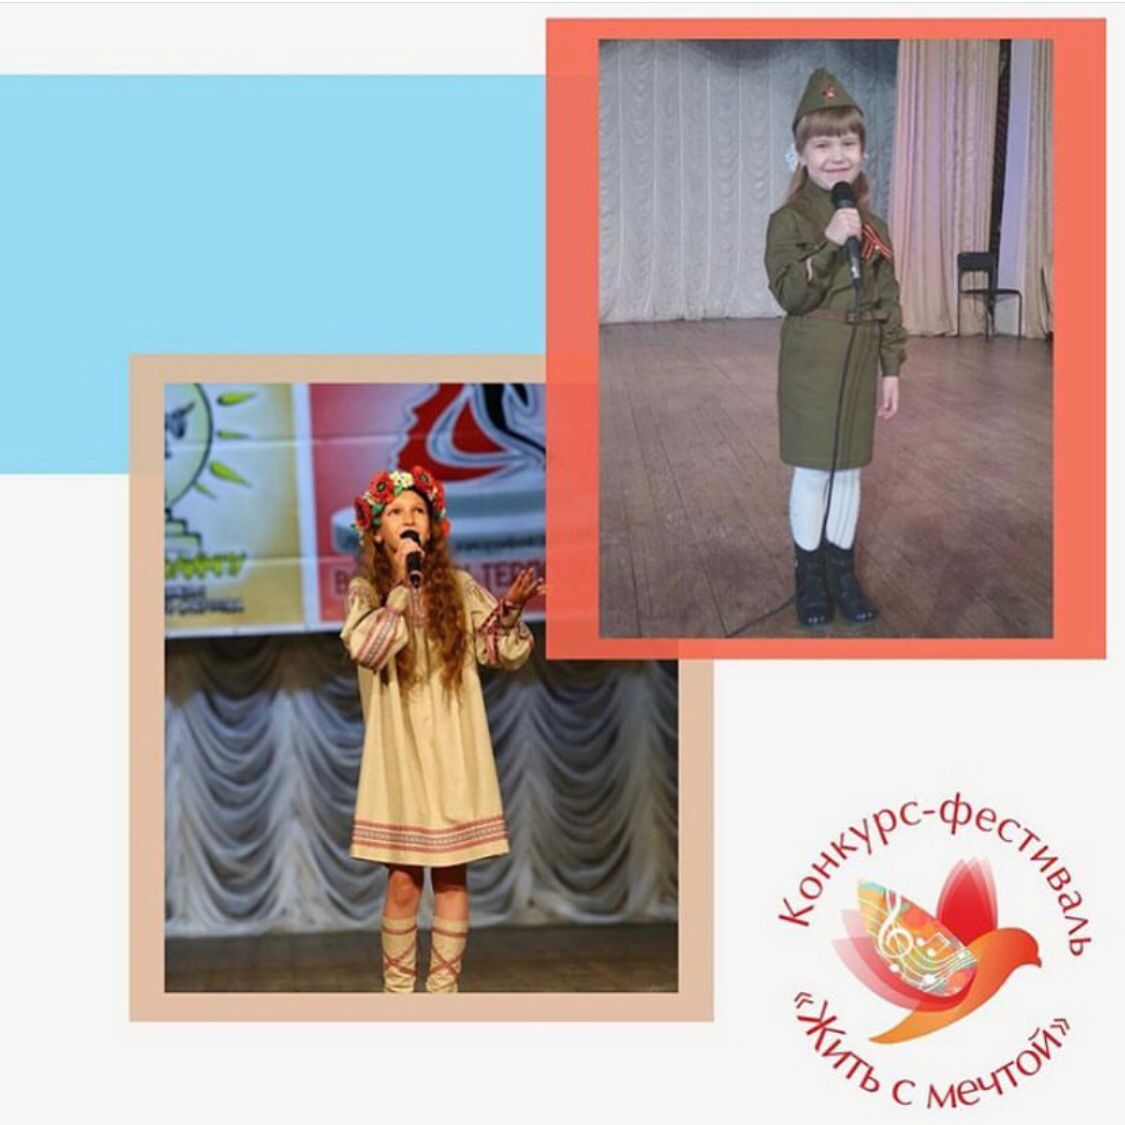 В Ставрополе прошёл конкурс-фестиваль «Жить с мечтой»